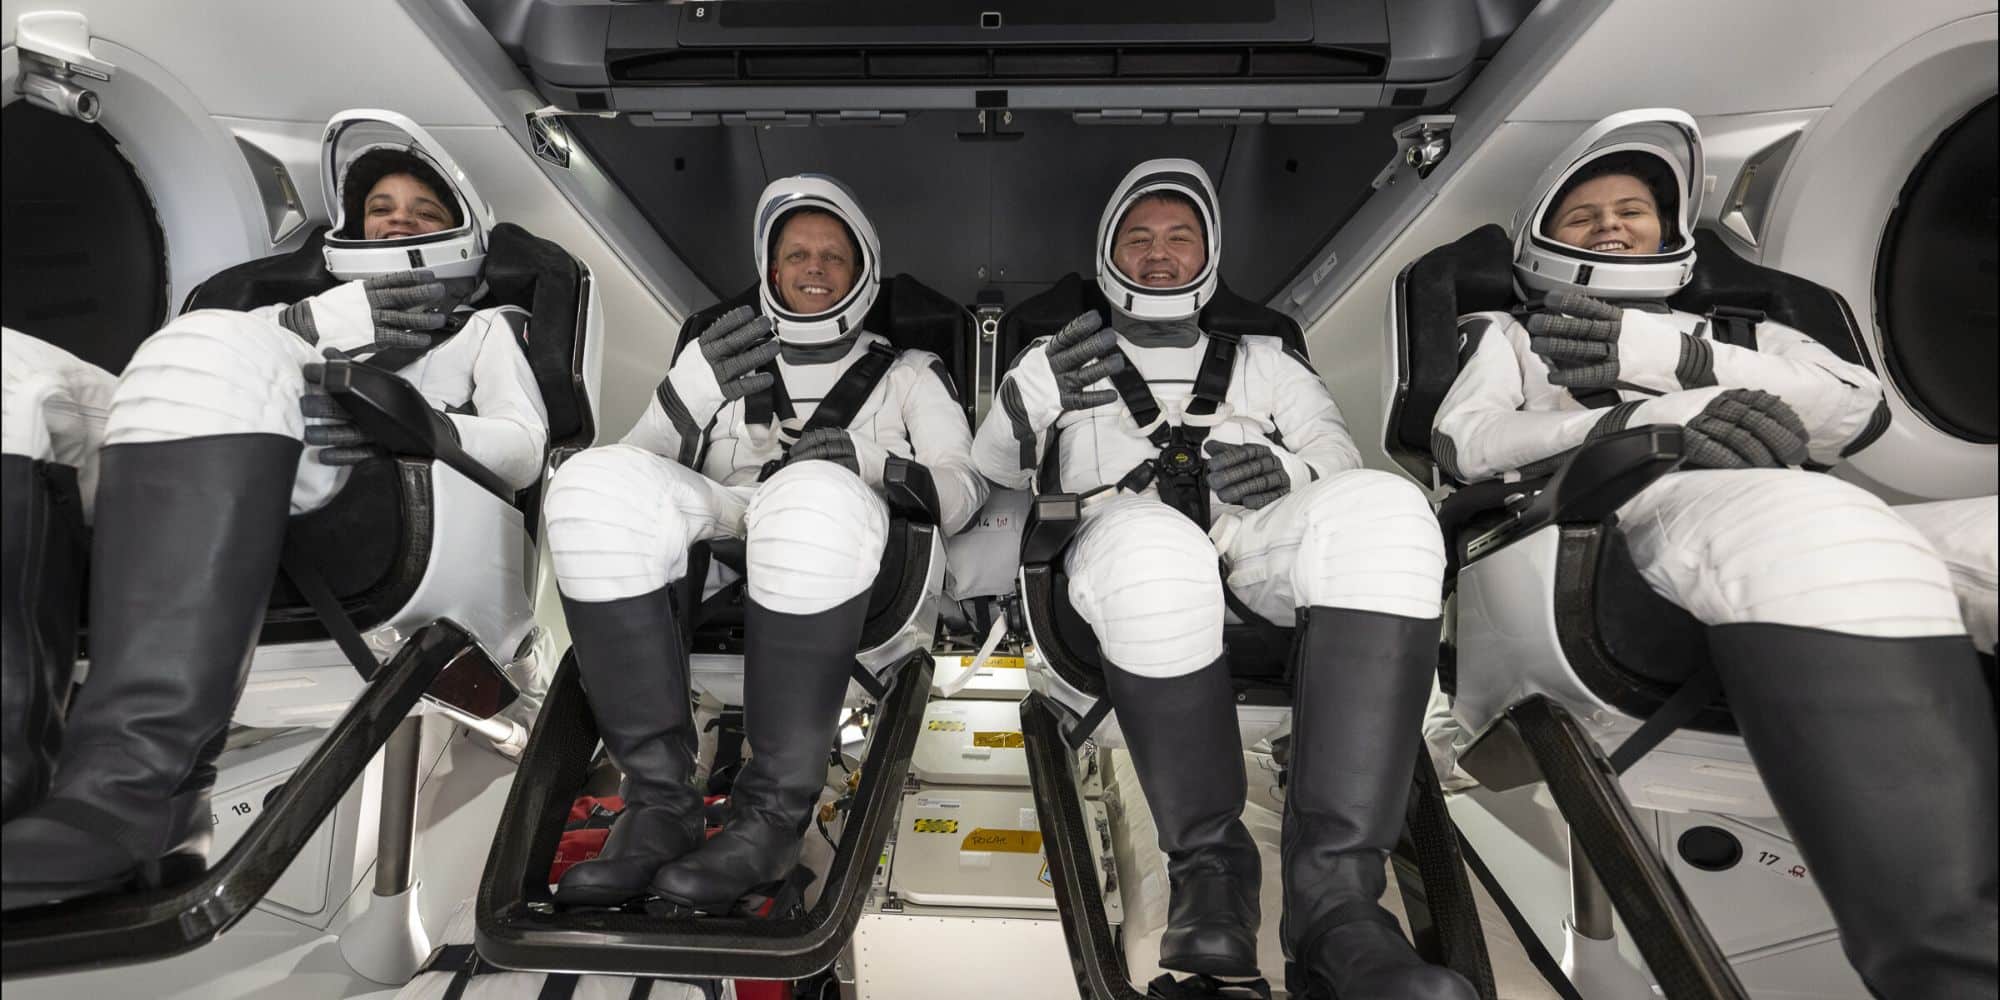 Οι 4 αστροναύτες που επέστρεψαν με κάψουλα της SpaceX